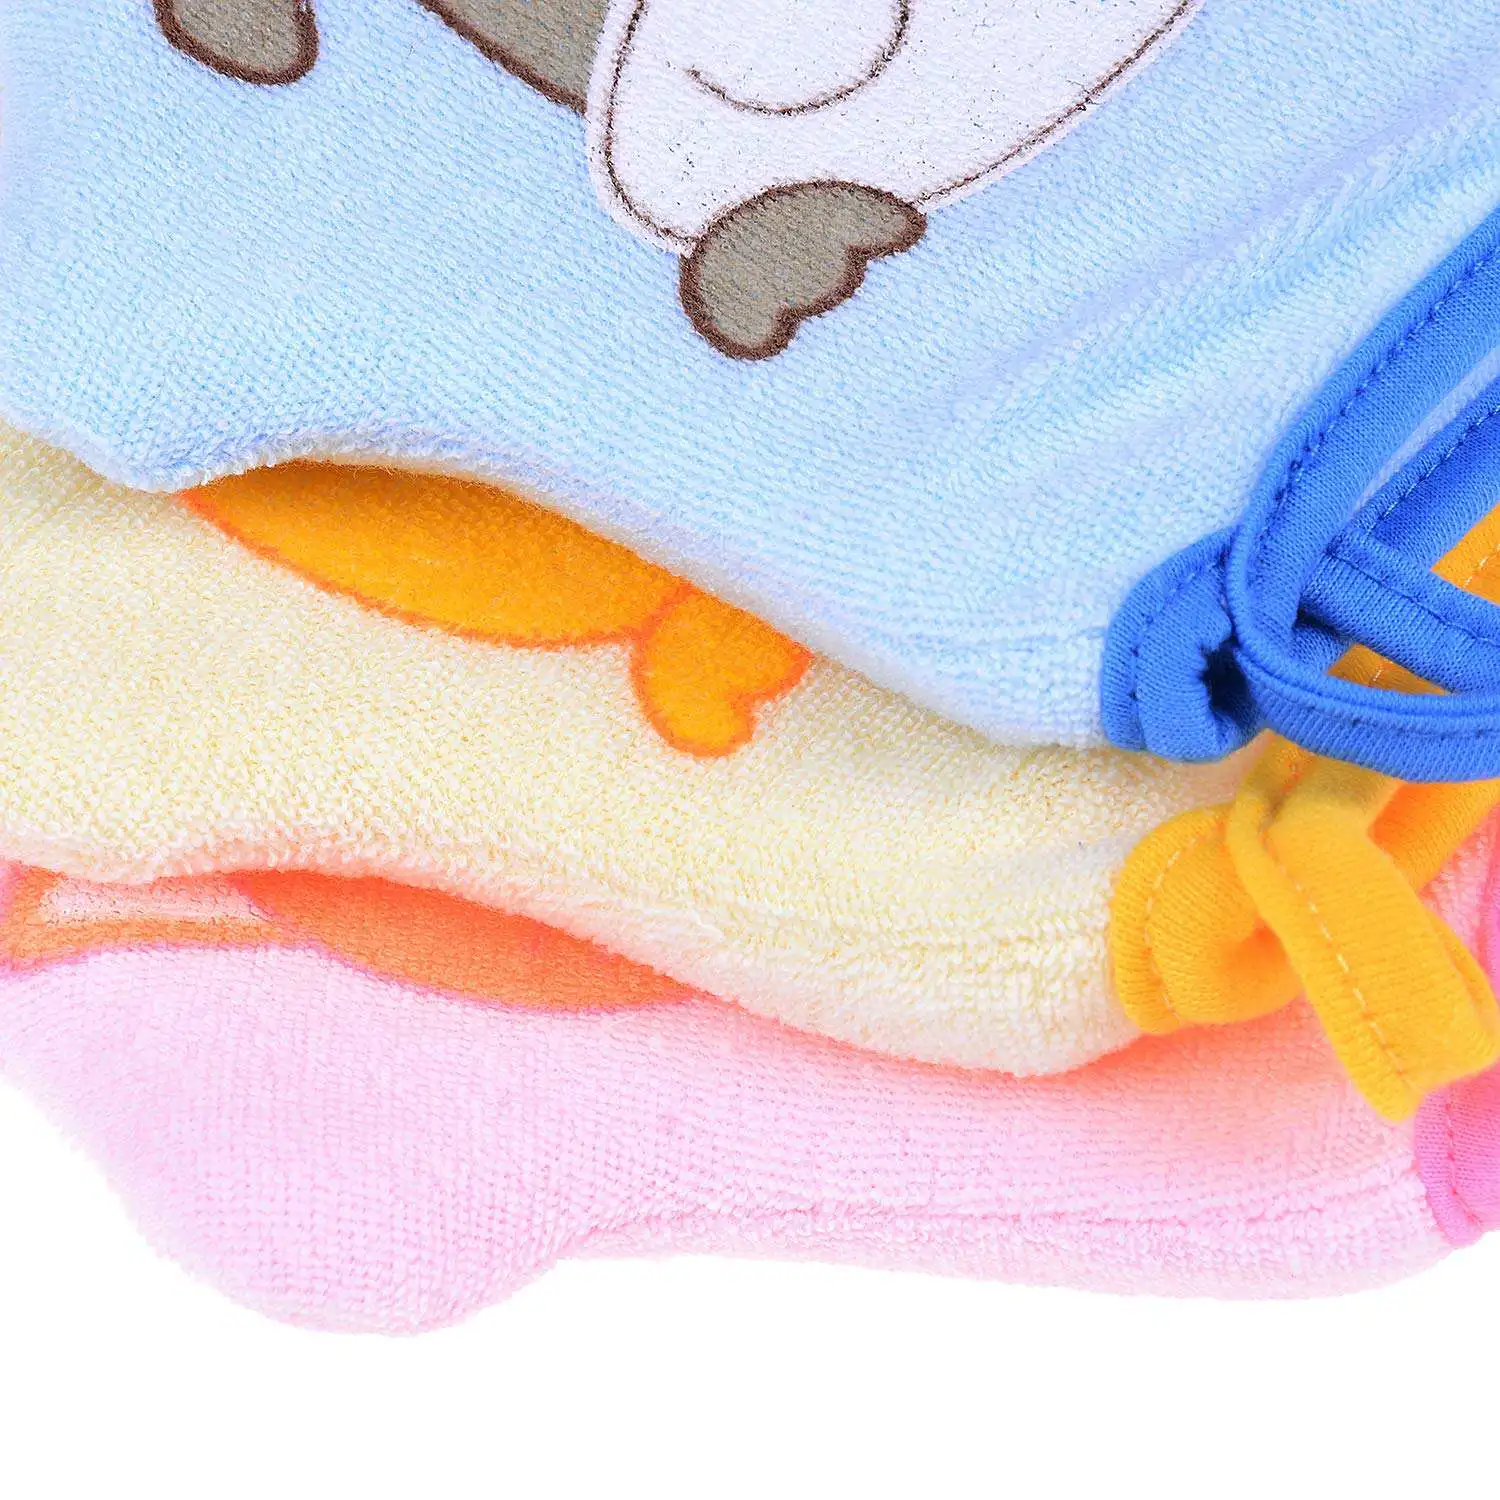 3 шт. детские перчатки для ванны милые животные Детские губки для ванны малыша мягкая щетка для душа хлопок полотенце мяч резиновый полотенце пена душ Spon